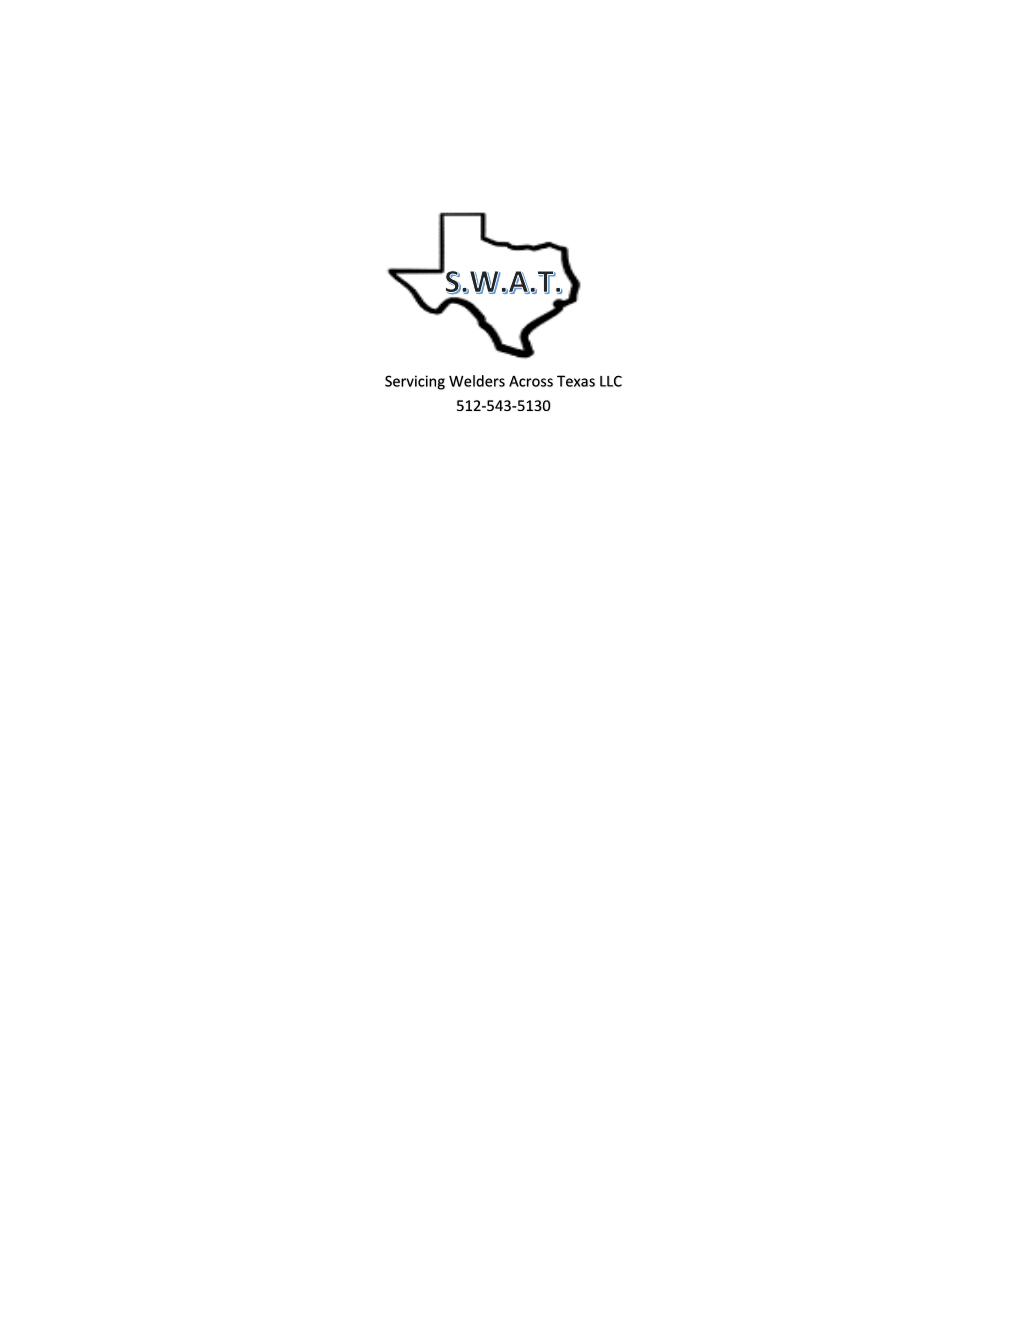 Servicing Welders Across Texas Logo